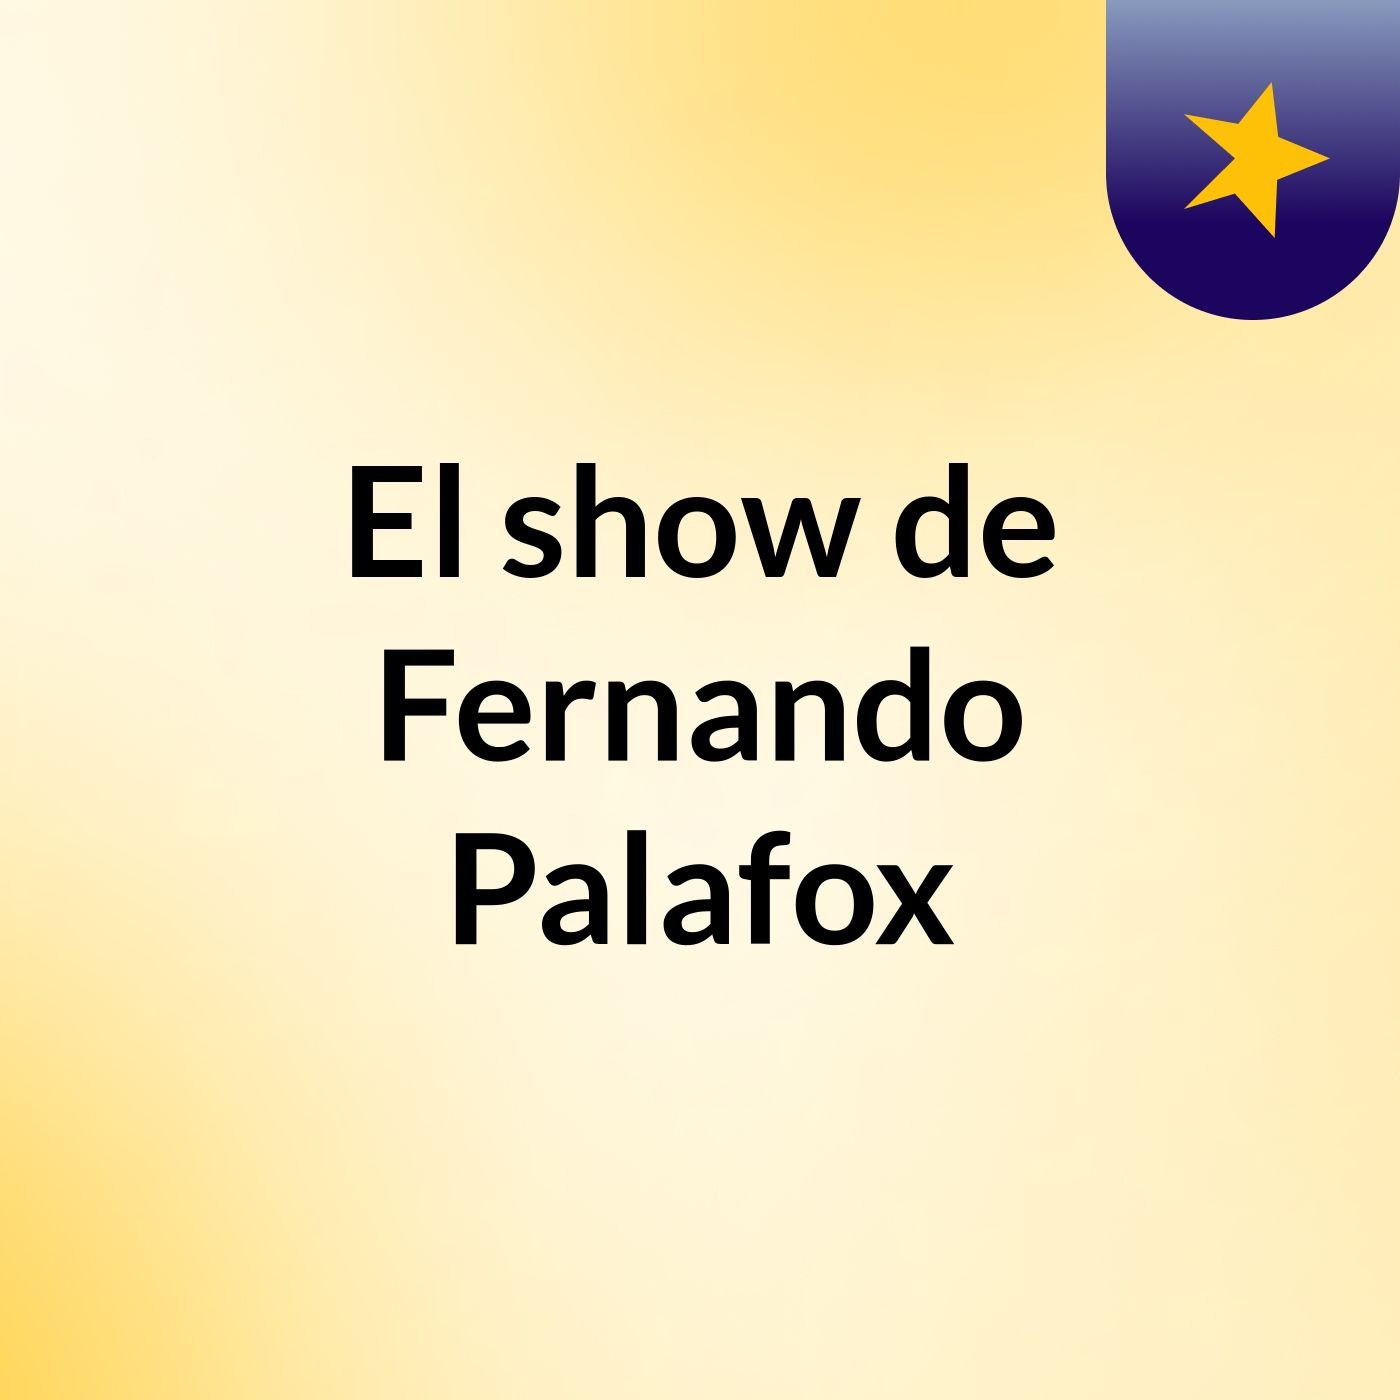 El show de Fernando Palafox